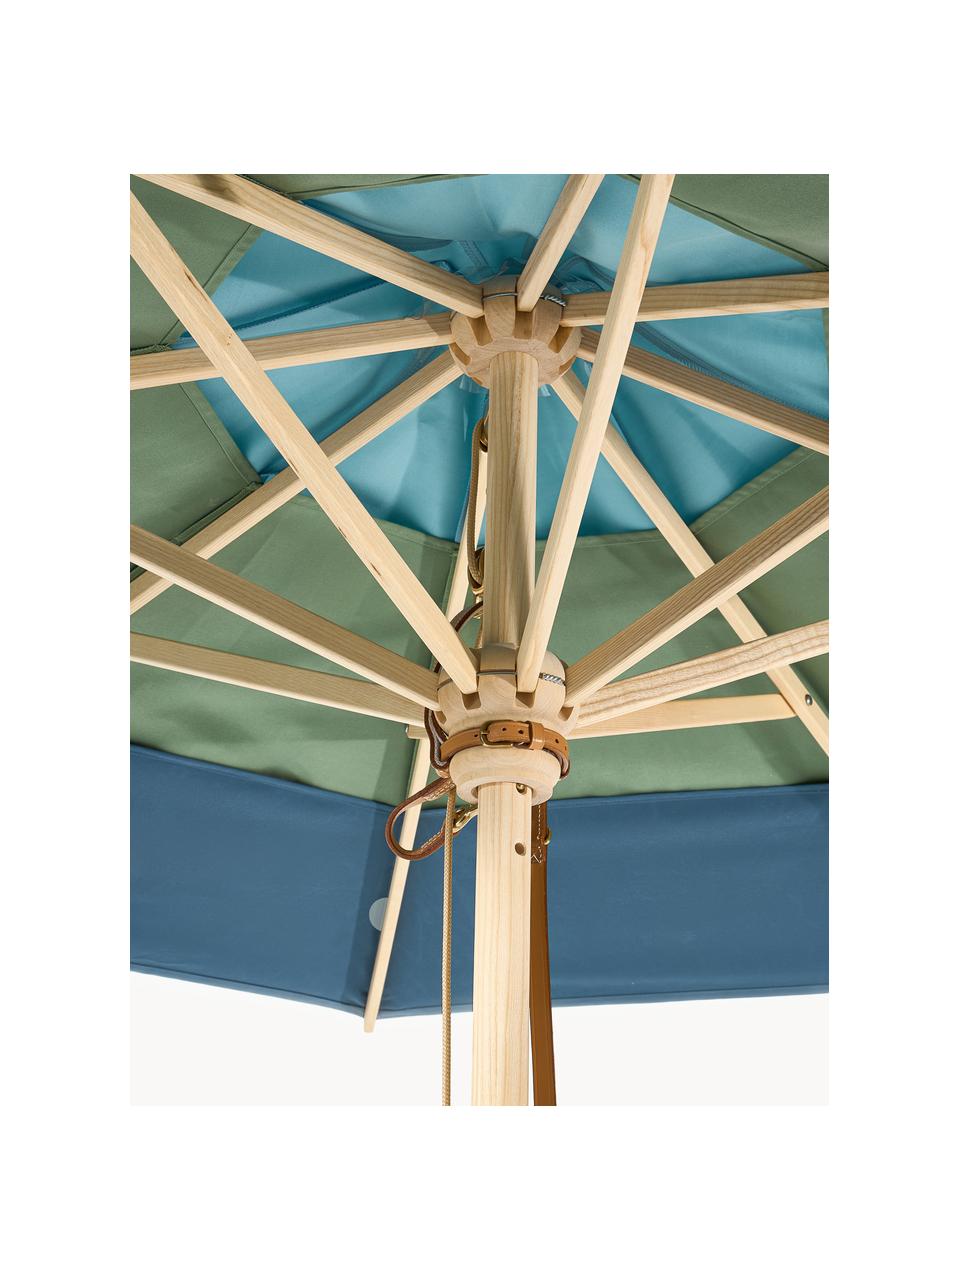 Runder Sonnenschirm Classic, verschiedene Größen, Gestell: Eschenholz, lackiert, Blautöne, Grün, Helles Holz, Ø 210 x H 251 cm